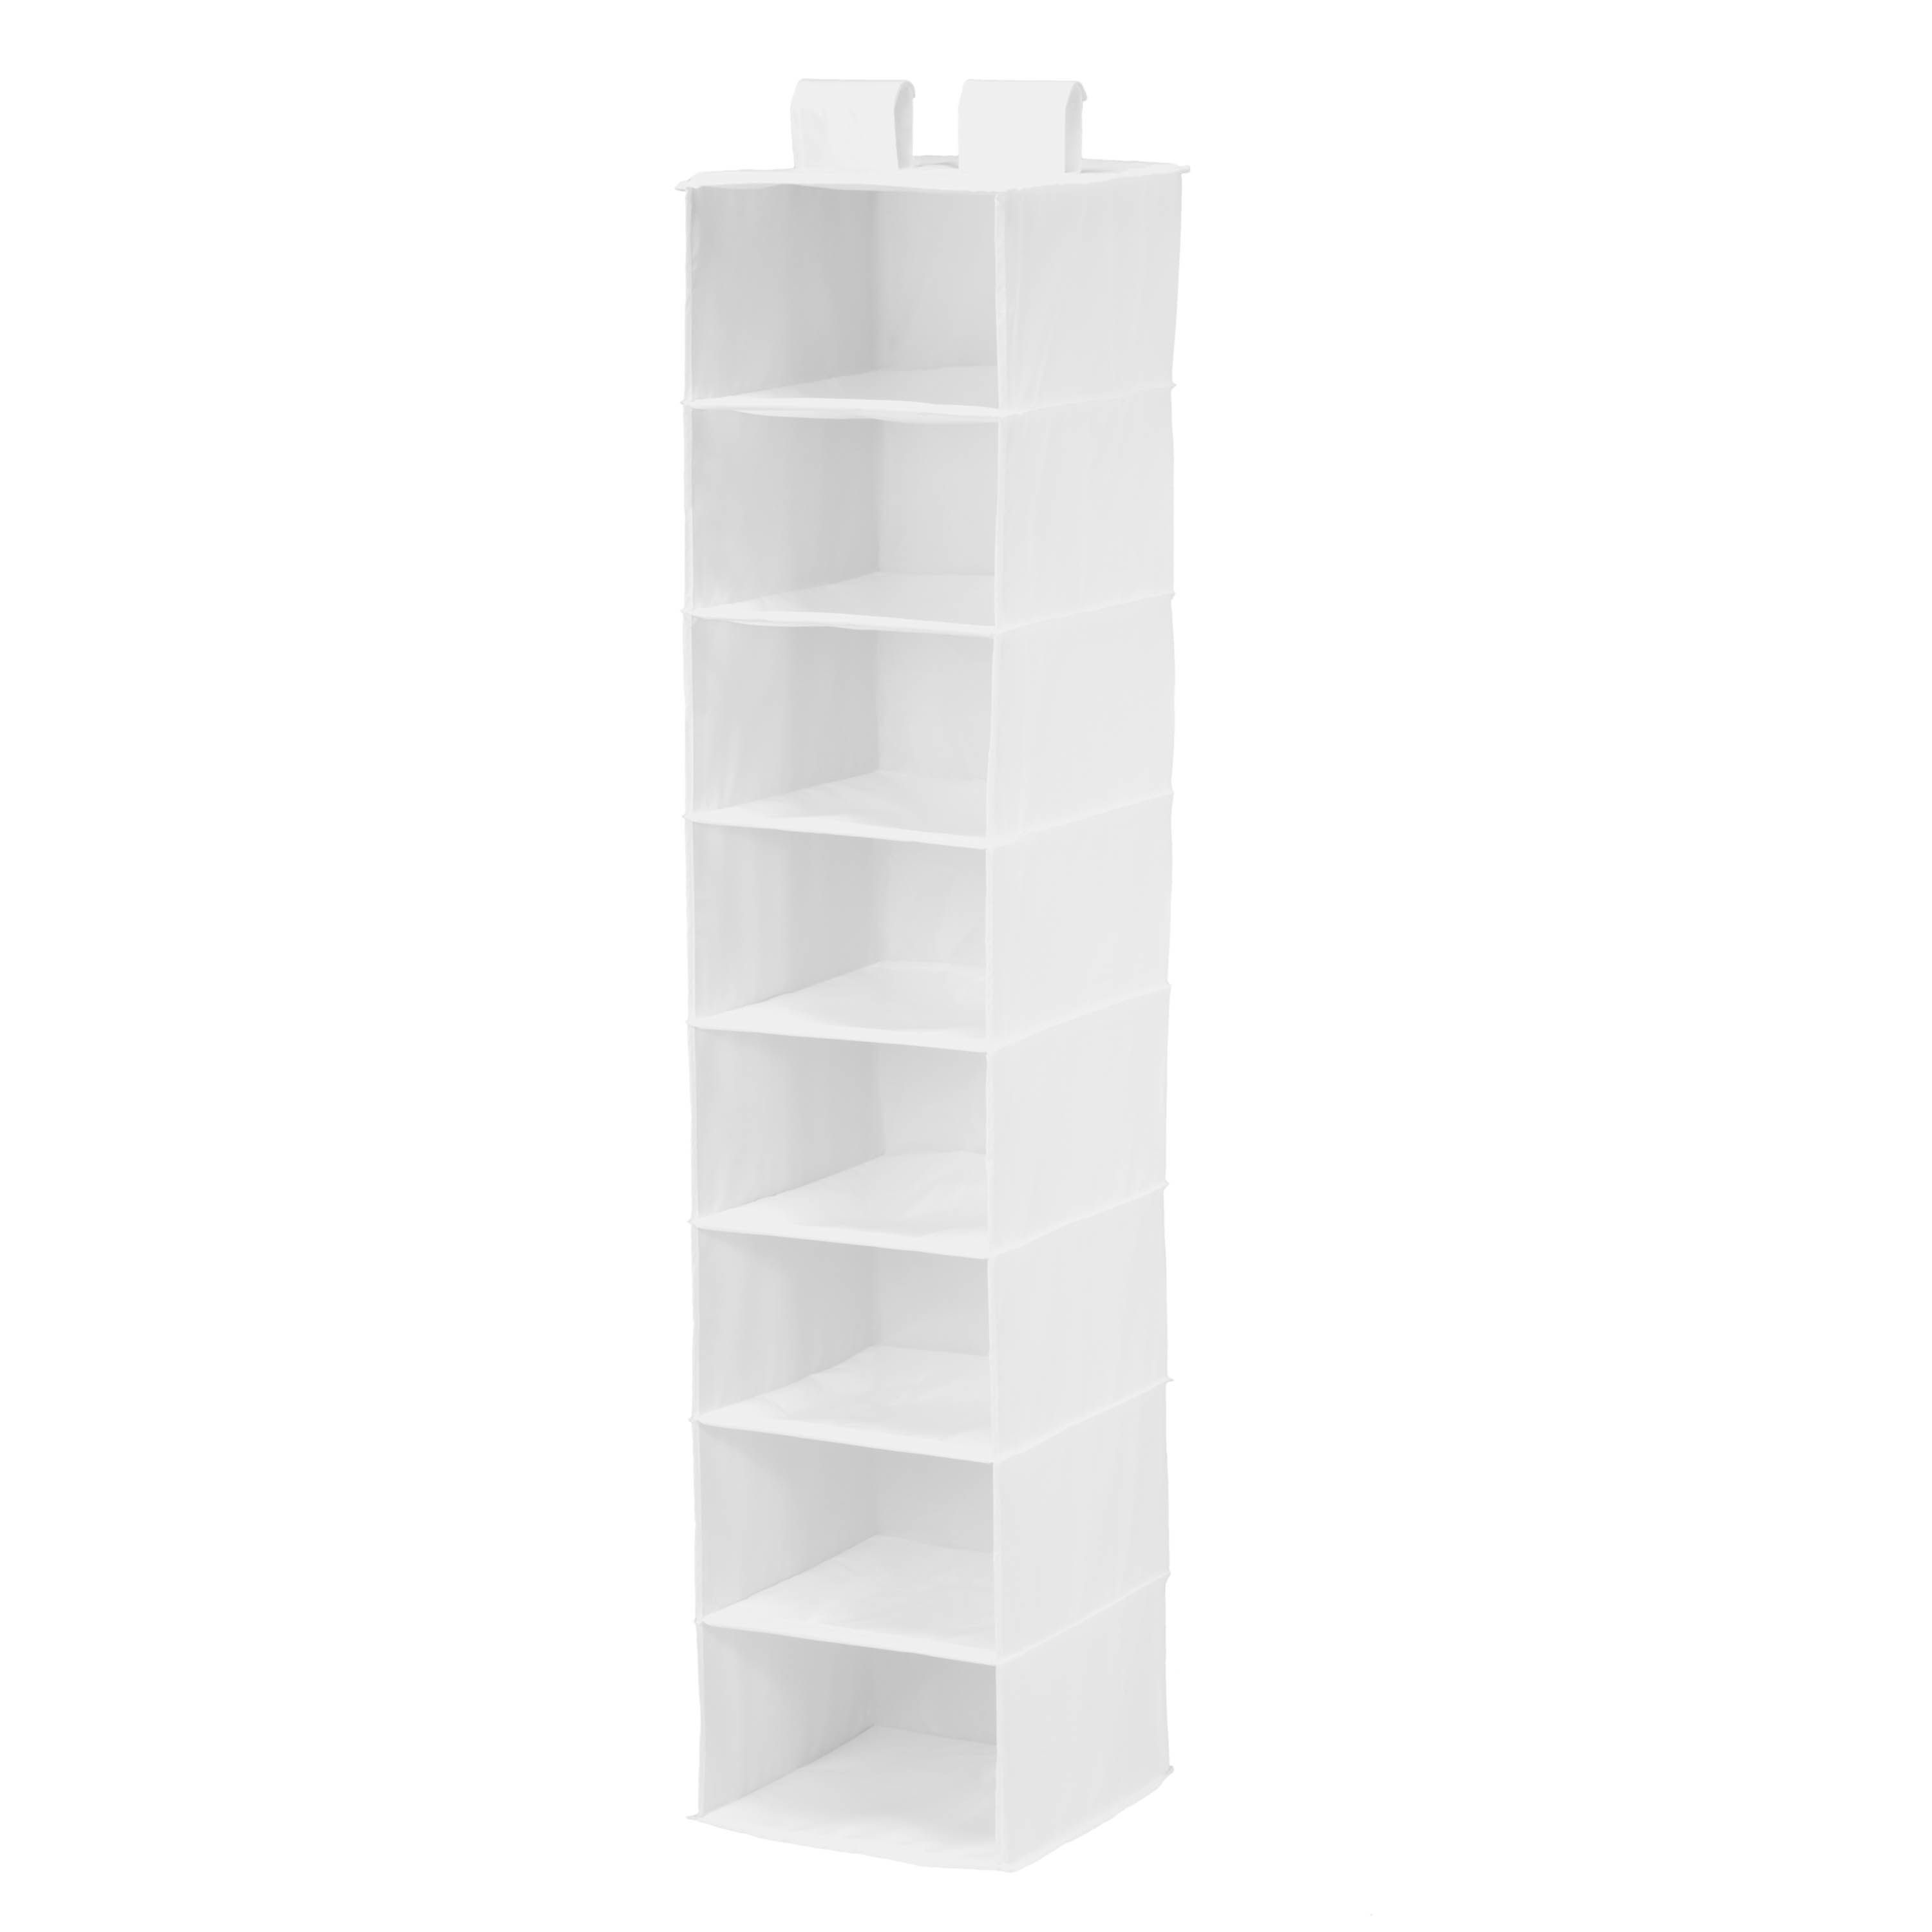 Black 8-Shelf Closet Organizer | Shelf Organizer